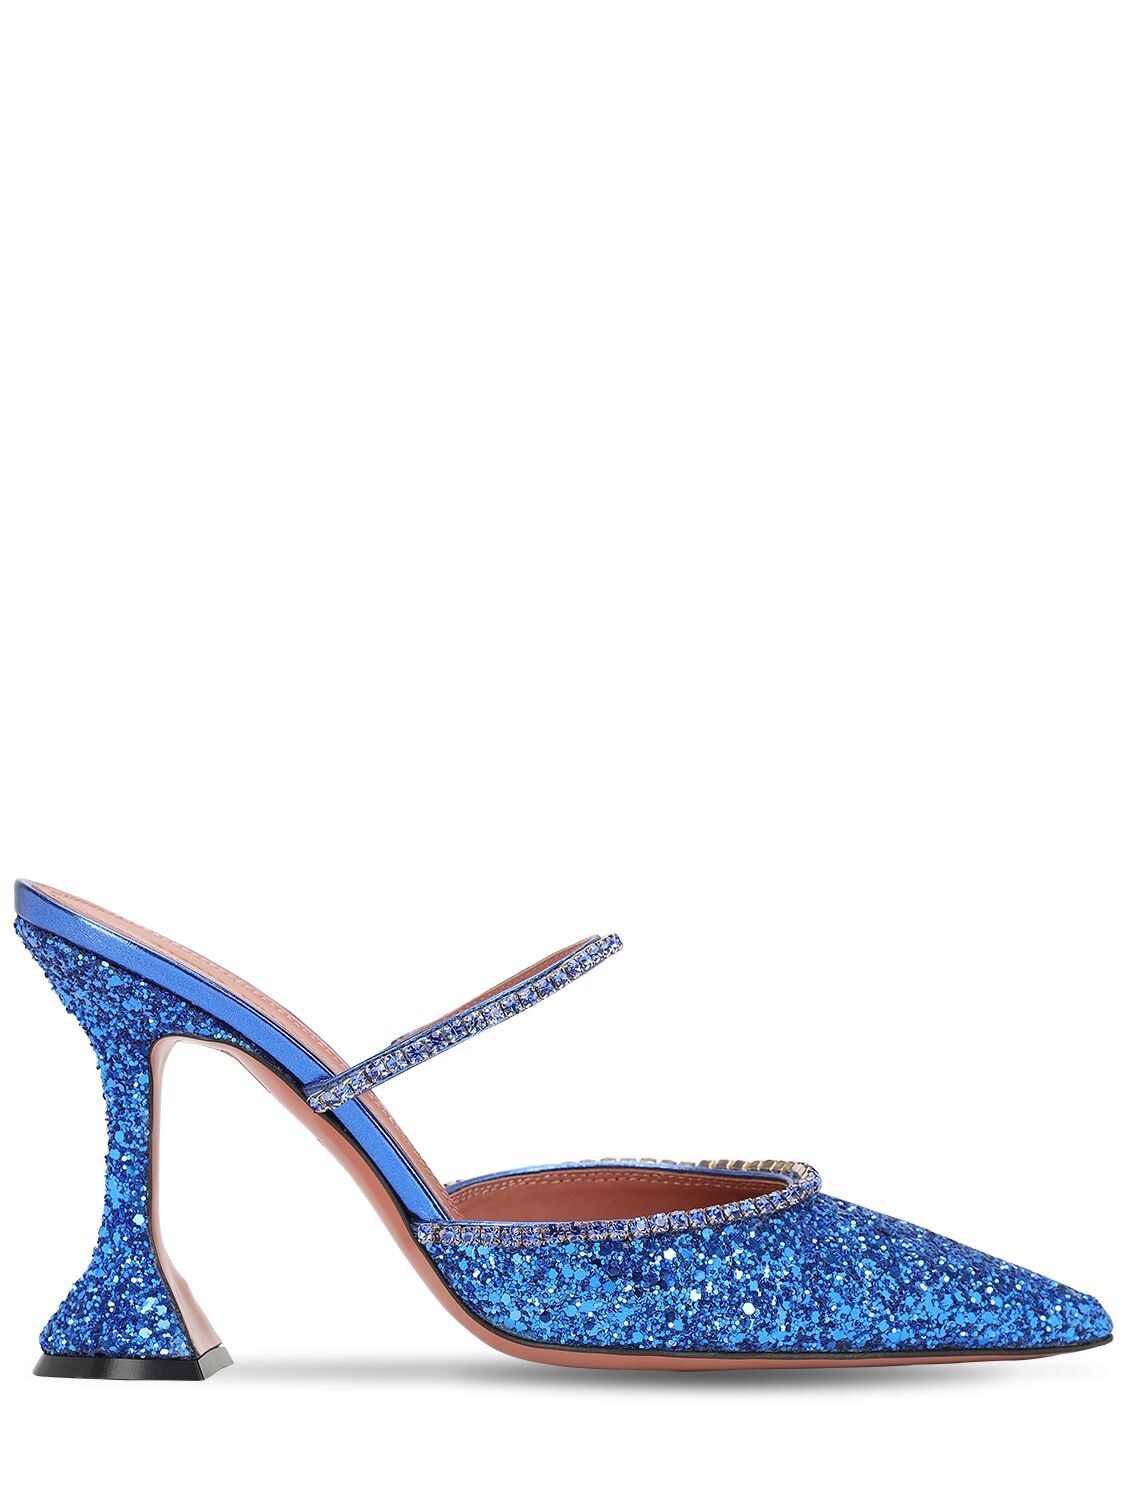 Amina Muaddi 100毫米“gilda”水晶装饰闪粉穆勒鞋 In Blue